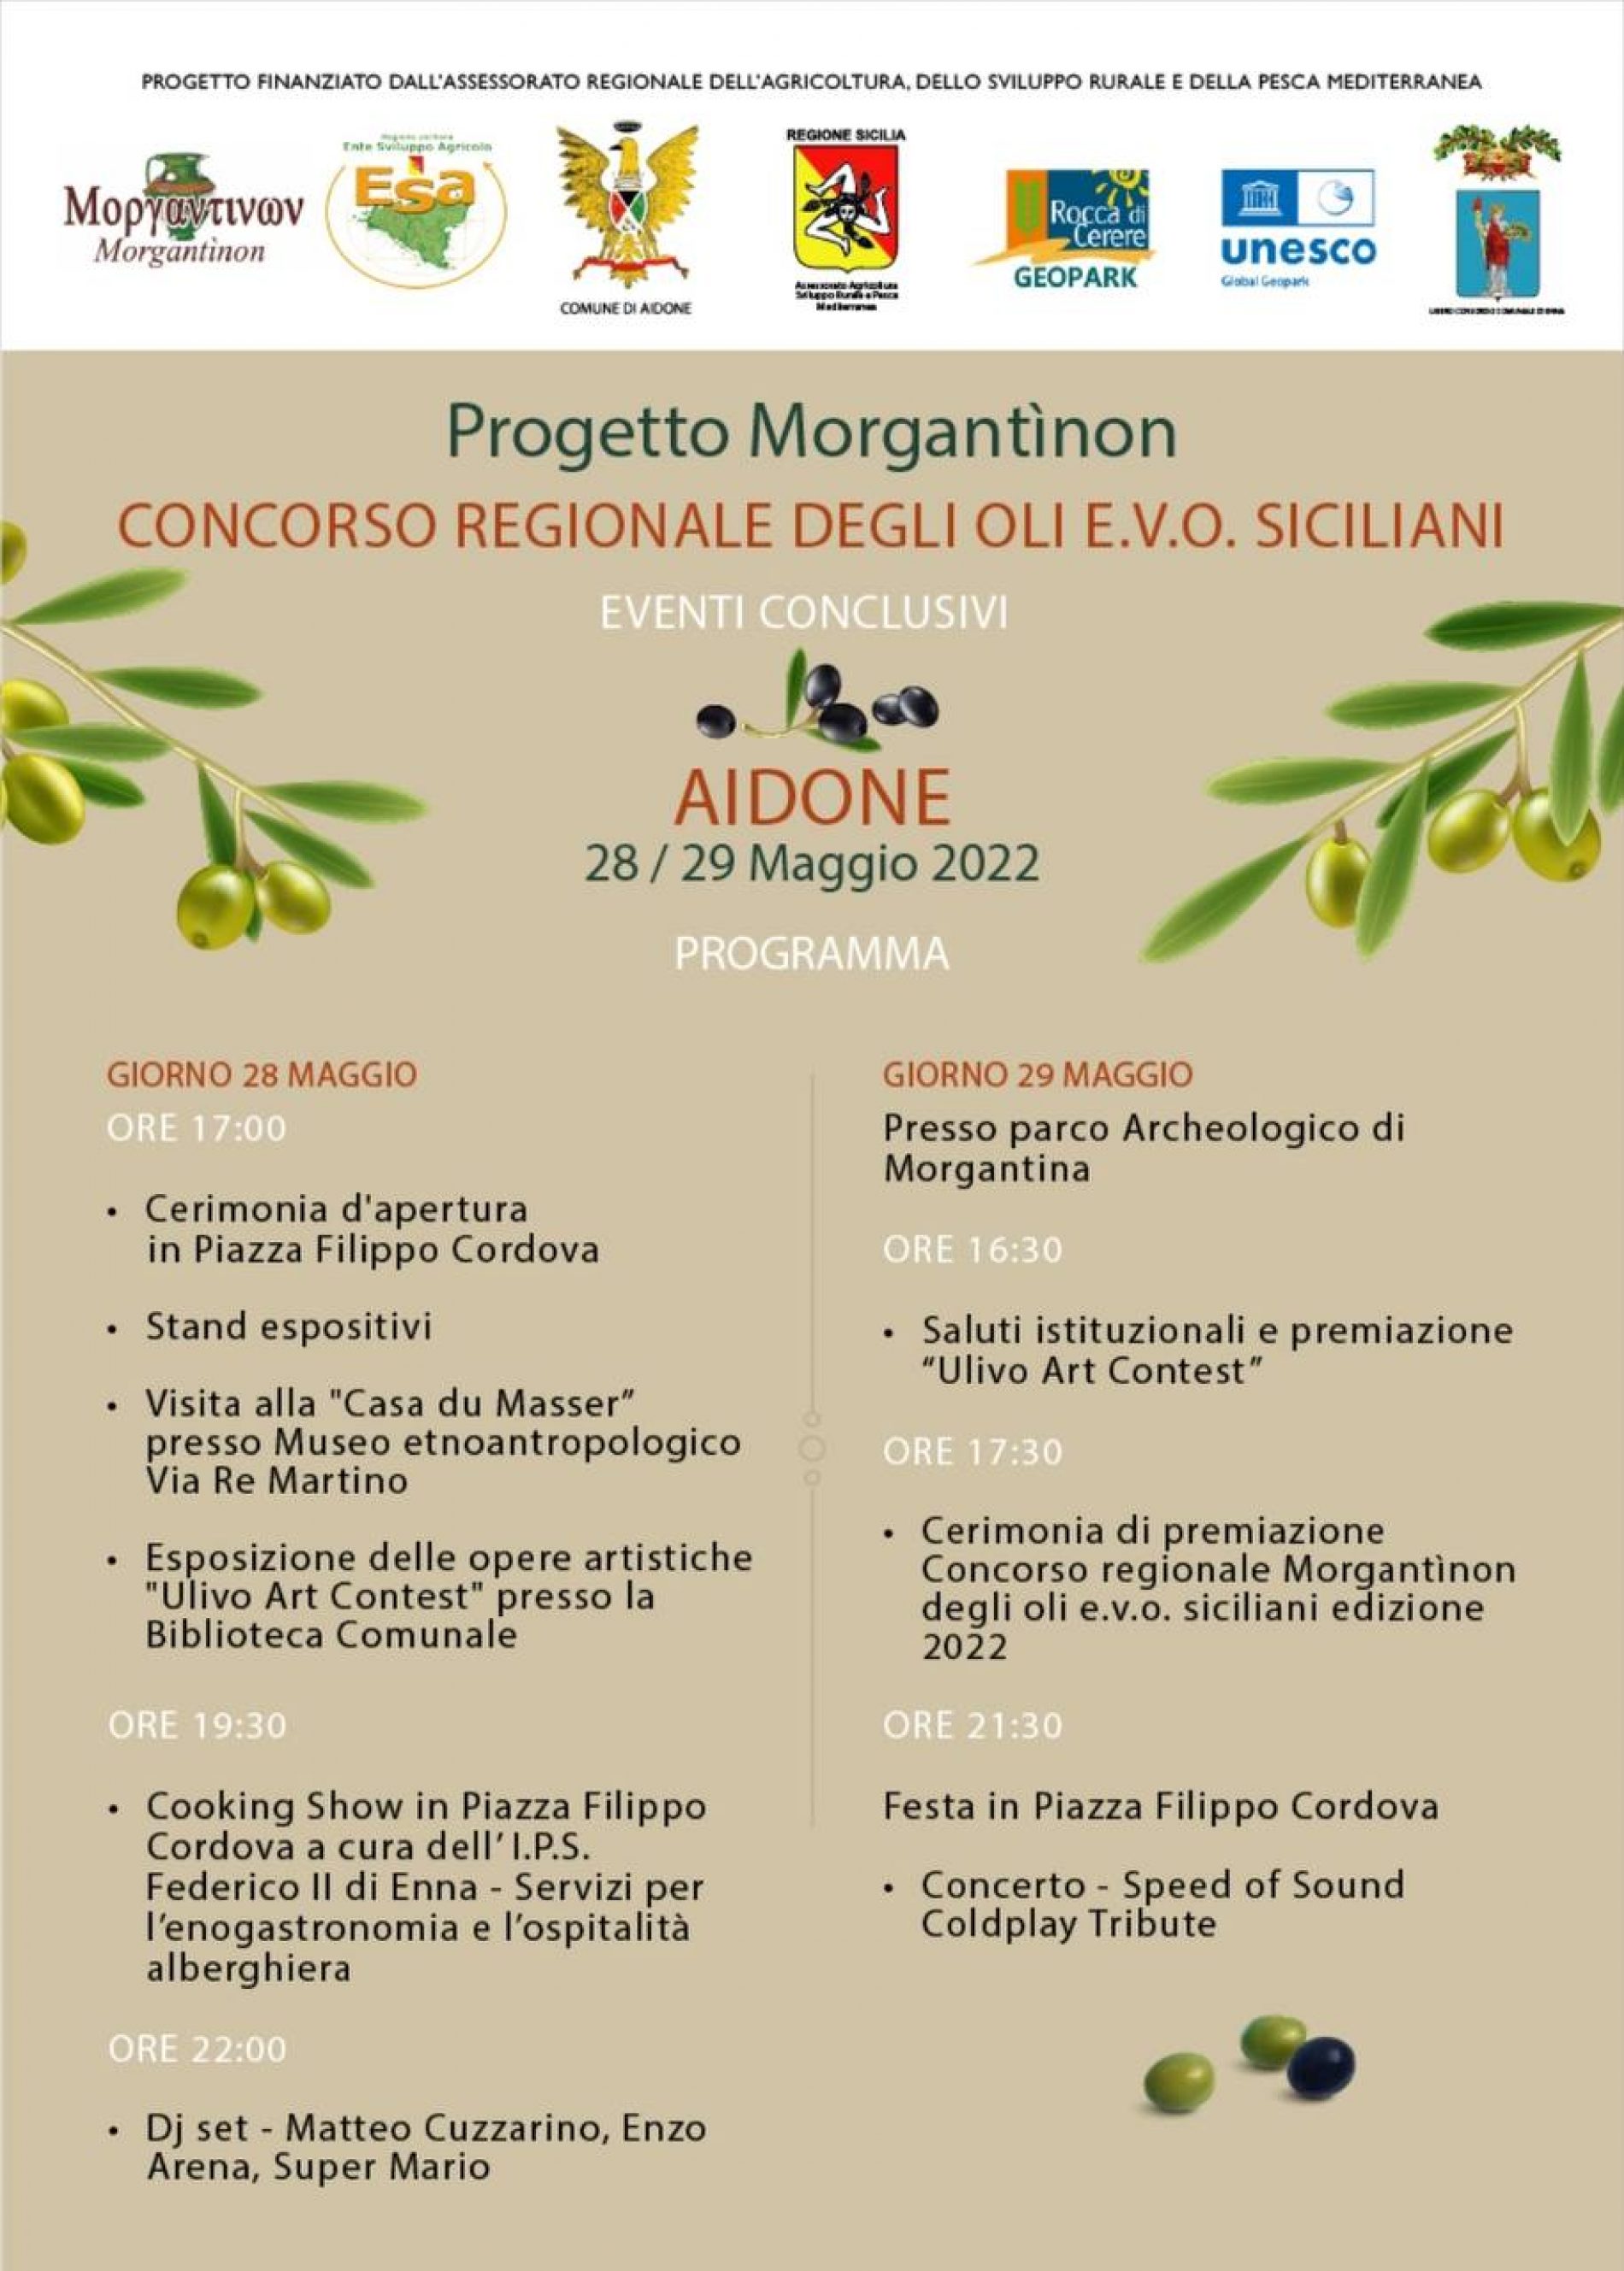 AIDONE. Progetto Morgantinon, il concorso regionale degli oli E.V.O. siciliani il 28-29 maggio